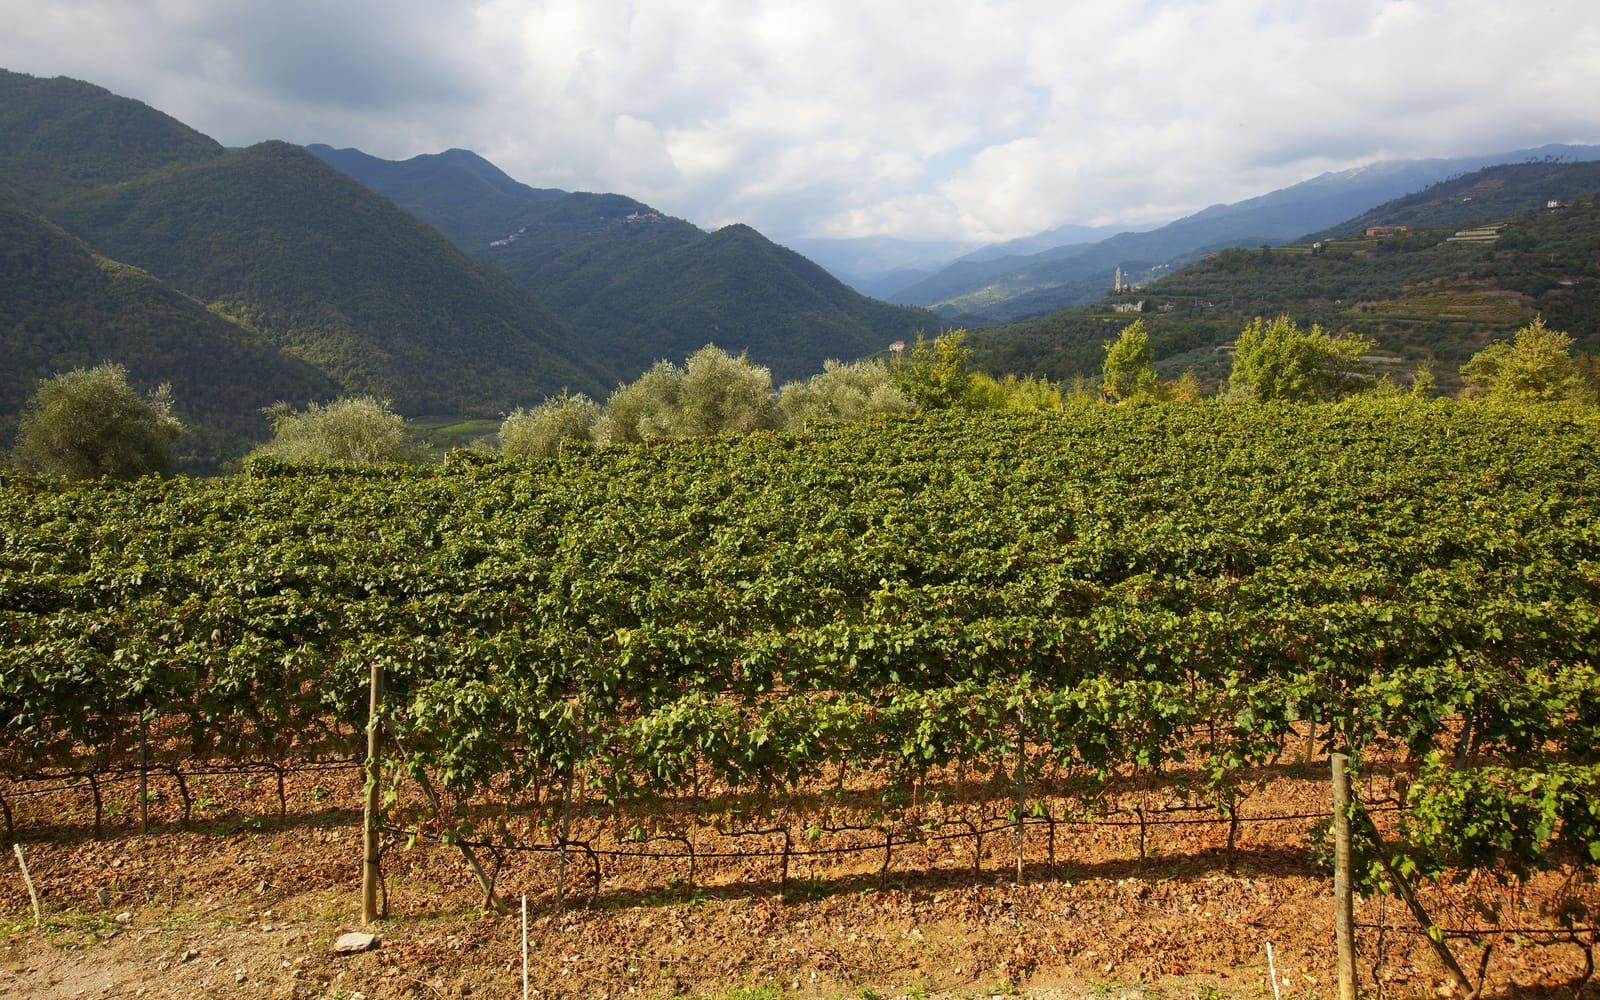 Ligurien är en vinregion. Här odlas främst gröna druvor, som Vermentino.